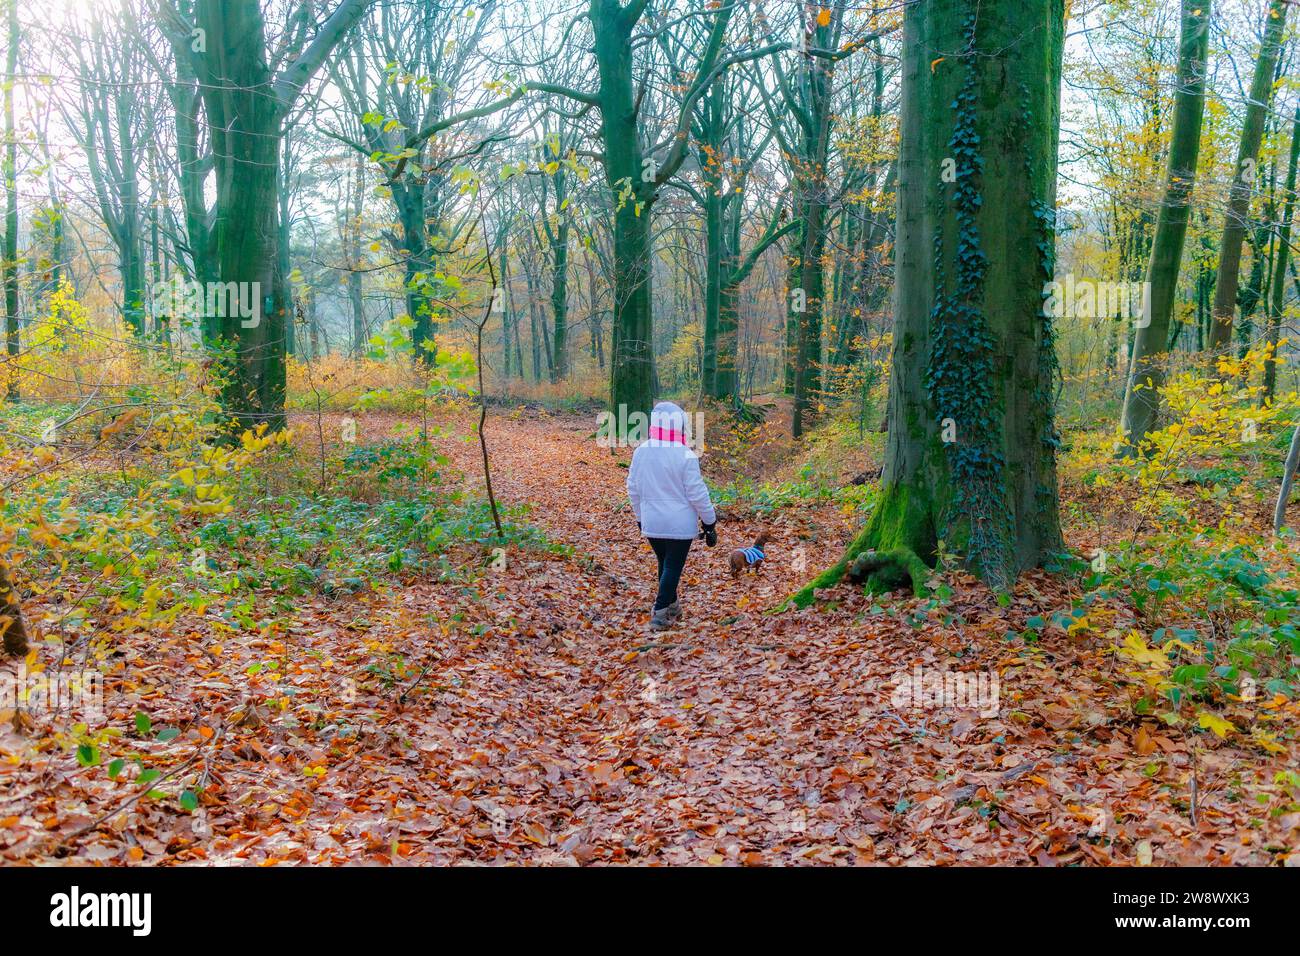 Paesaggio autunnale con sentiero tra vegetazione selvaggia con la donna con il suo cane, sfondo nebbioso, colori giallo oro e arancio, riserva naturale olandese Gelee Foto Stock